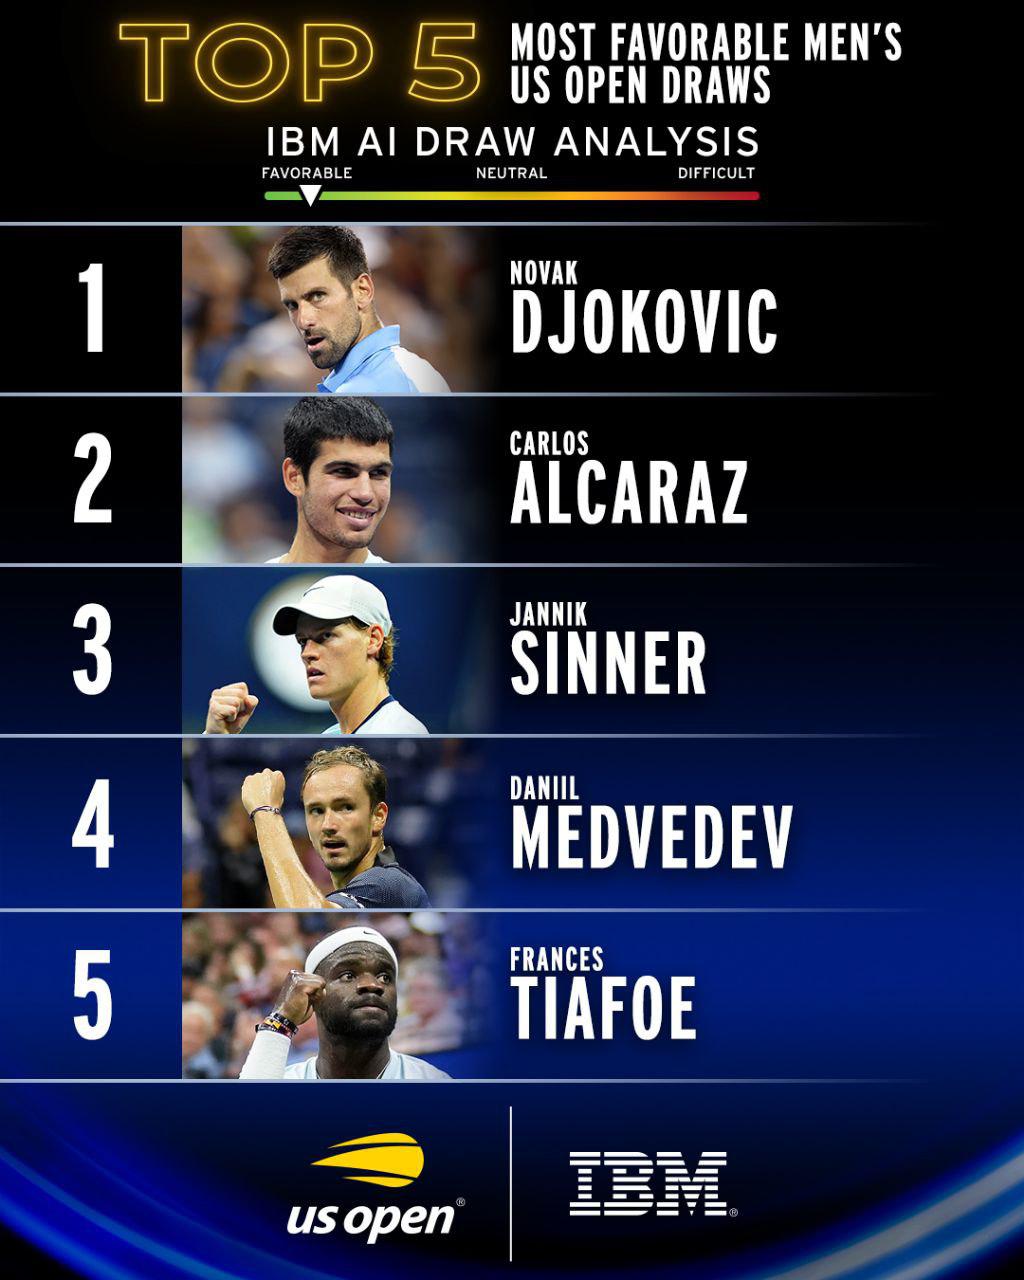 Даниил Медведев вошел в топ-5 игроков c самой легкой сеткой на US Open